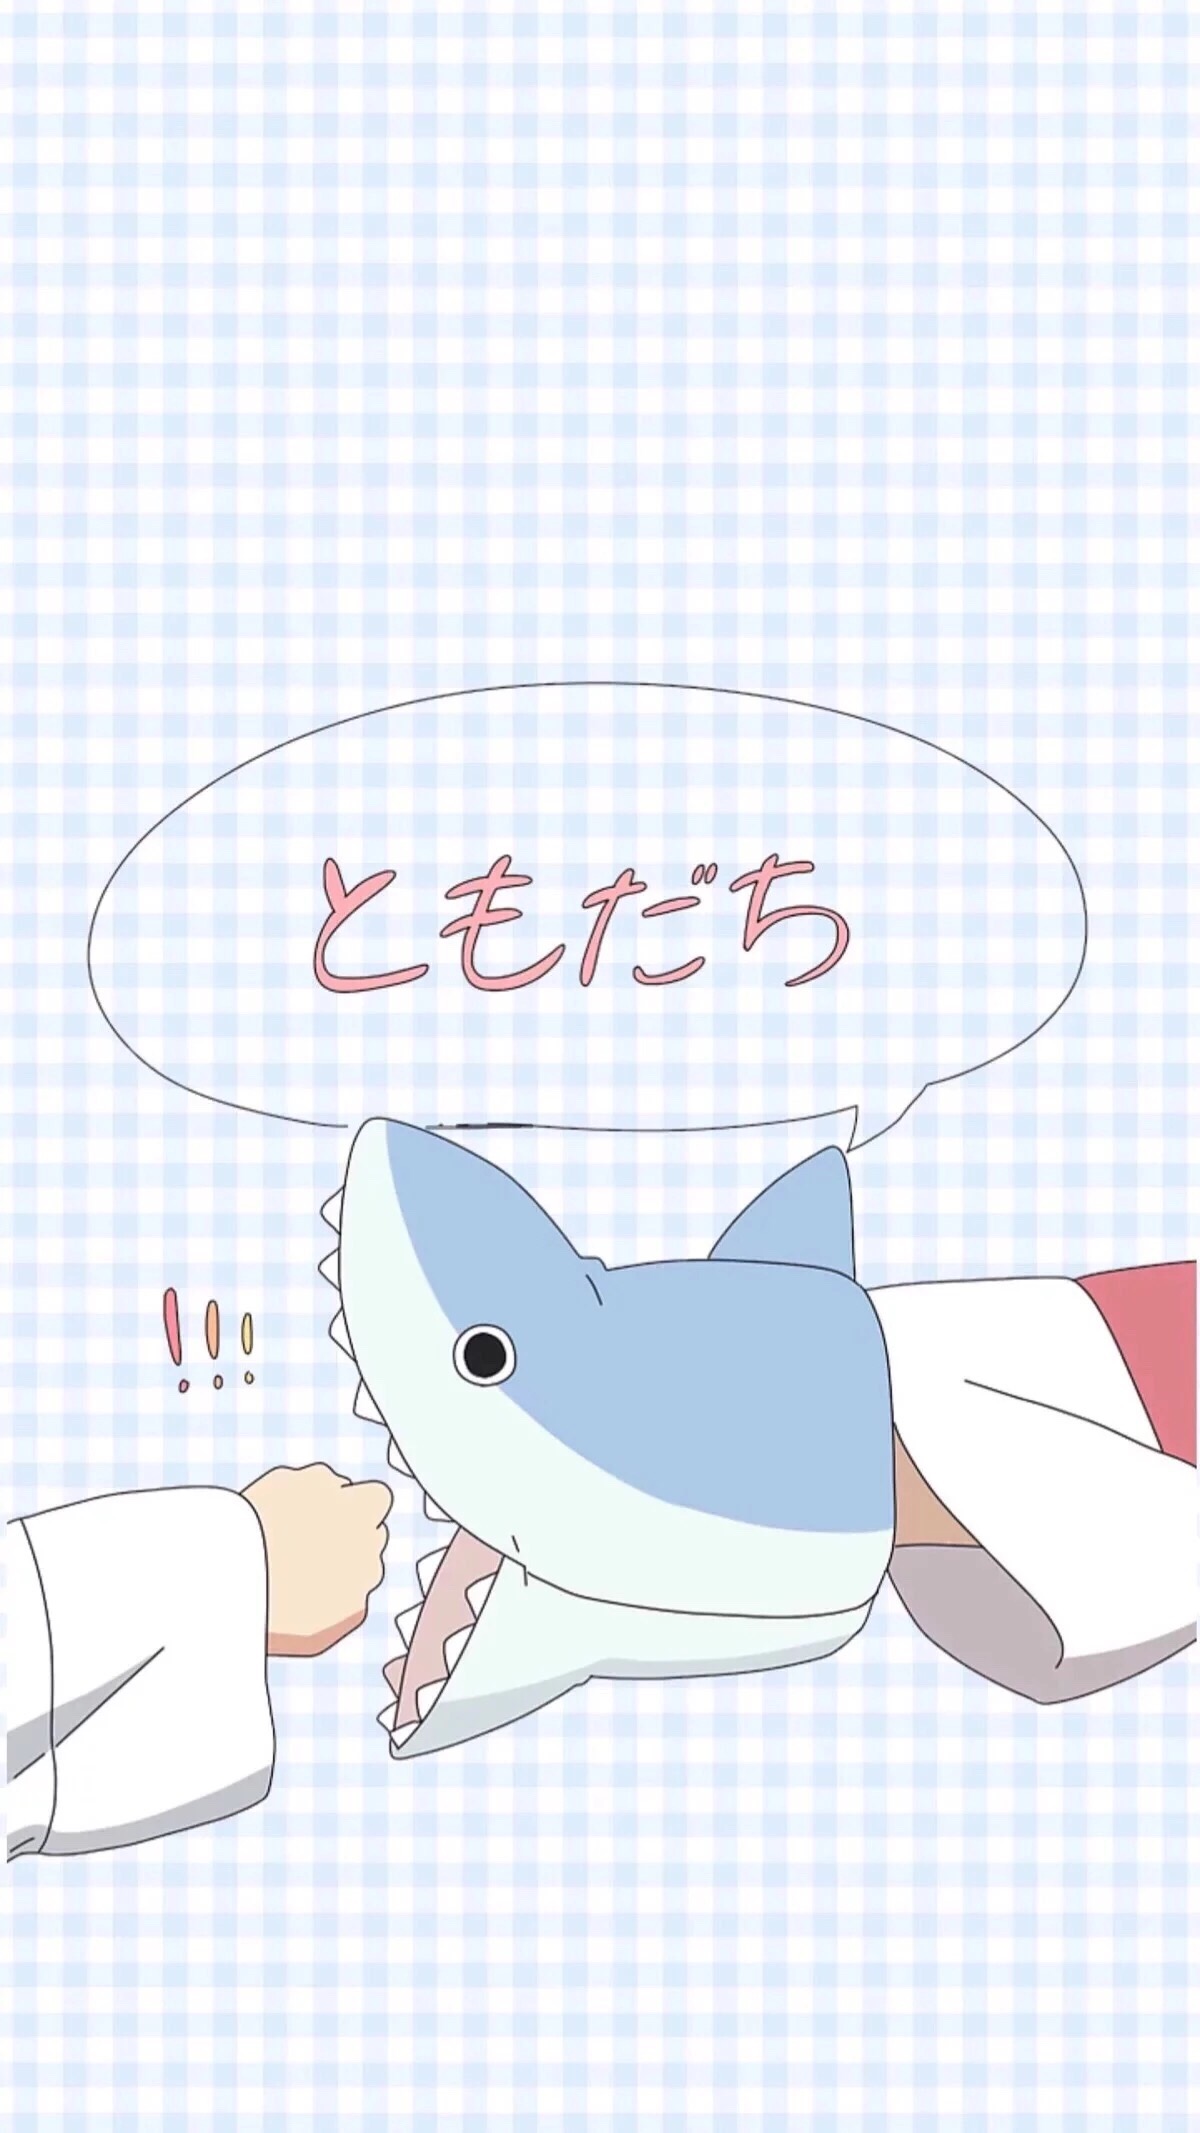 吐舌鲨鱼壁纸卡通图片